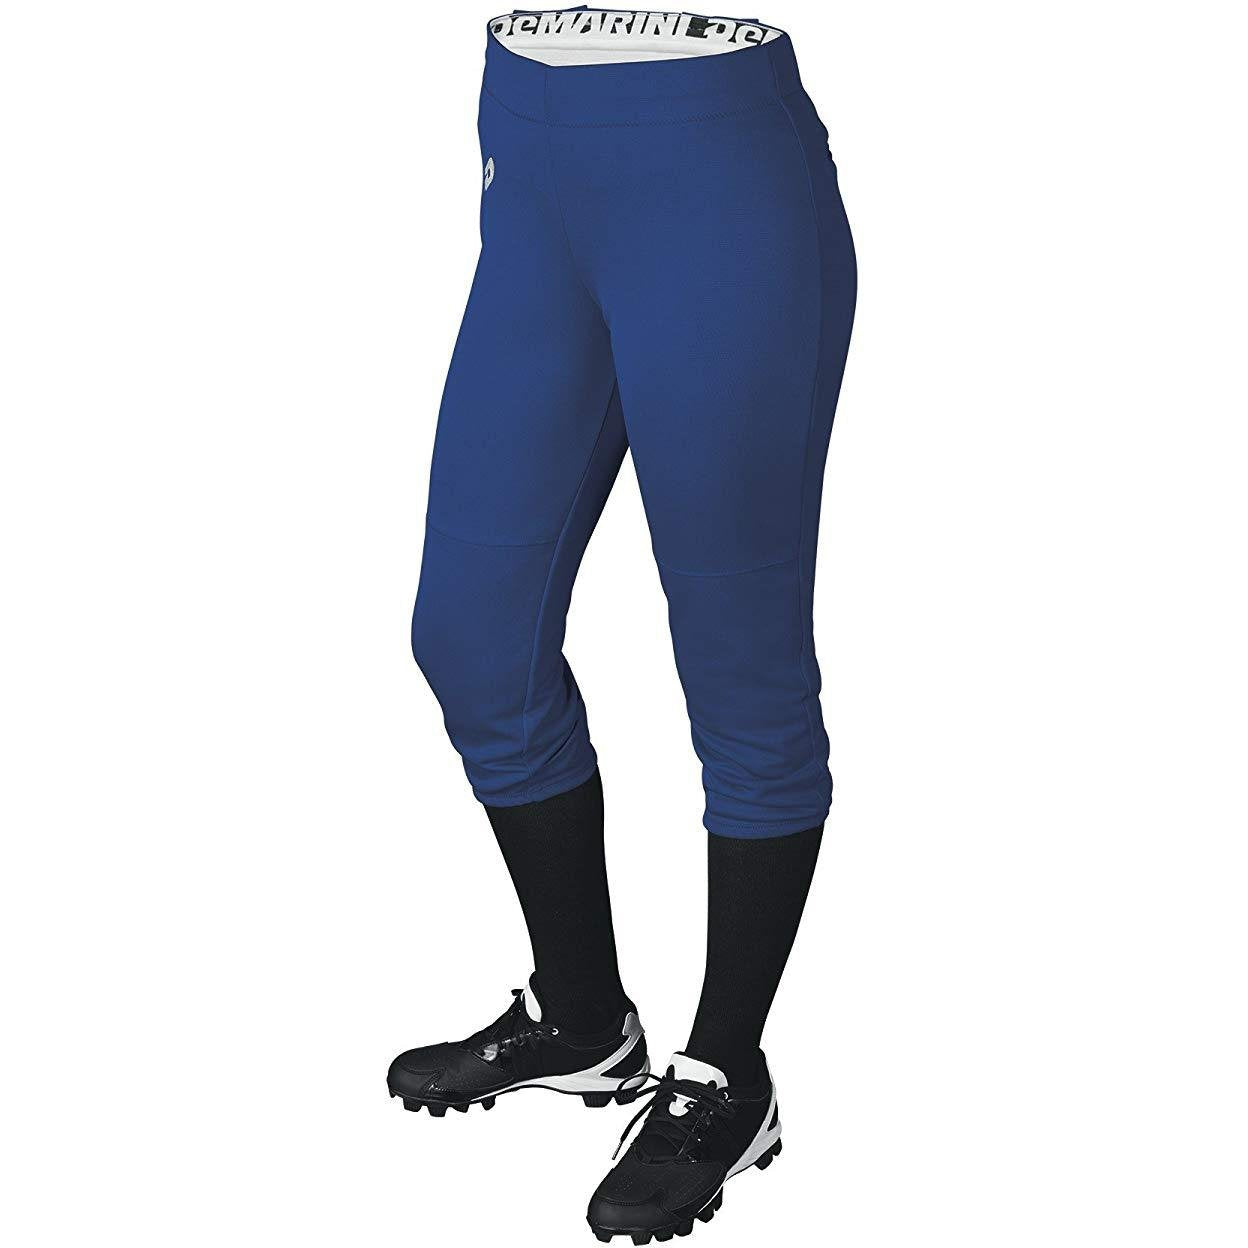 Buy A4 NG6166-NVY Softball Pants, X-Large, Navy at Amazon.in